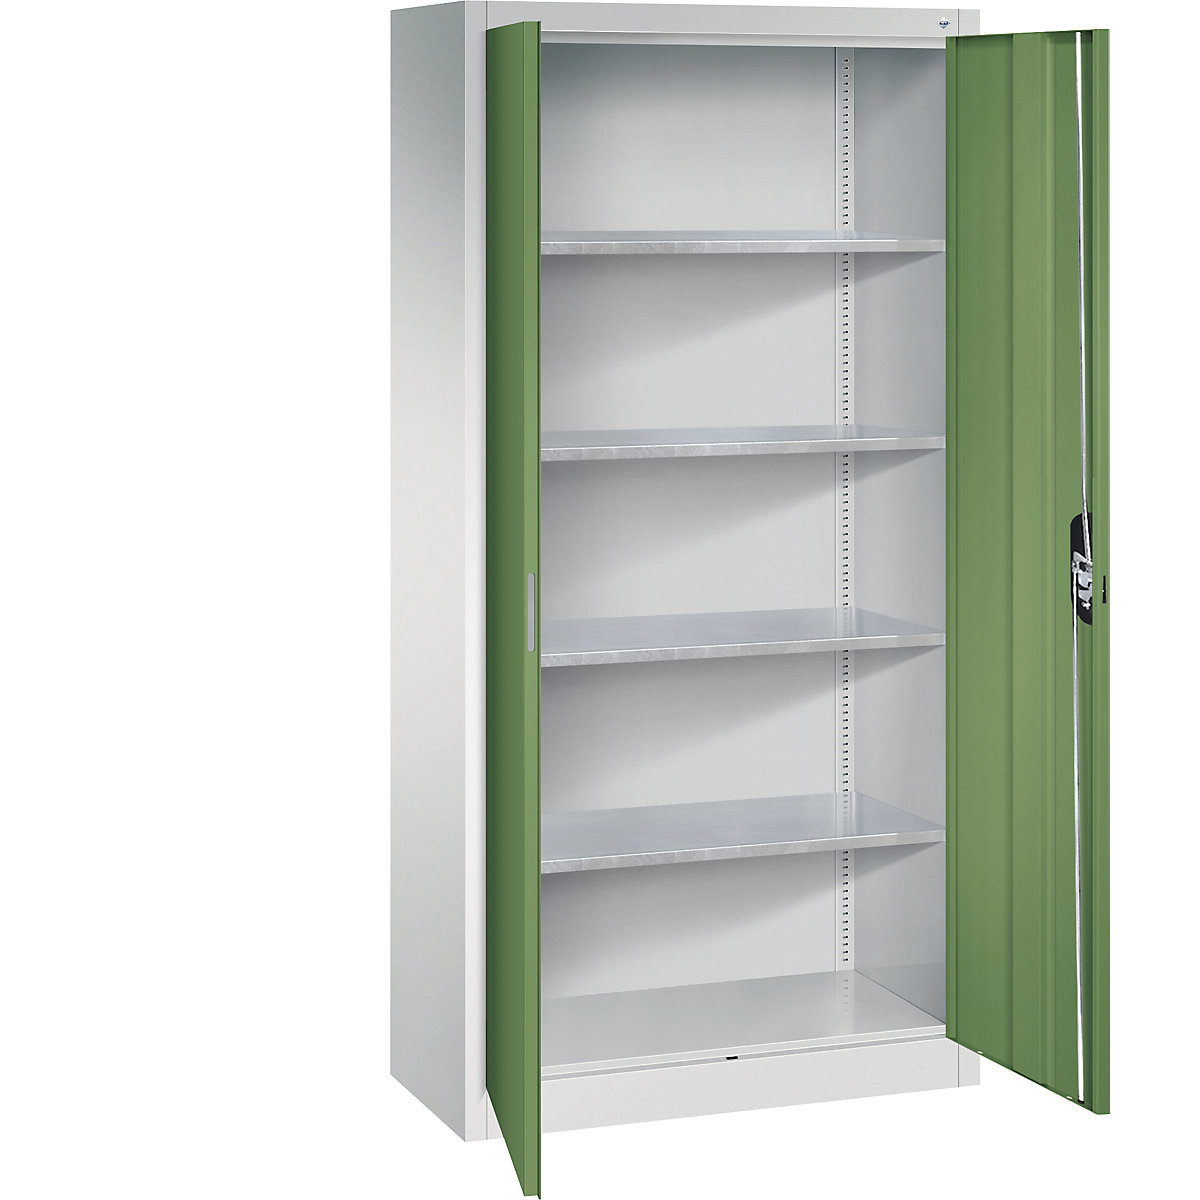 Dílenská skříň s otočnými dveřmi – C+P, v x š x h 1950 x 930 x 400 mm, světlá šedá / rezedová zelená-10